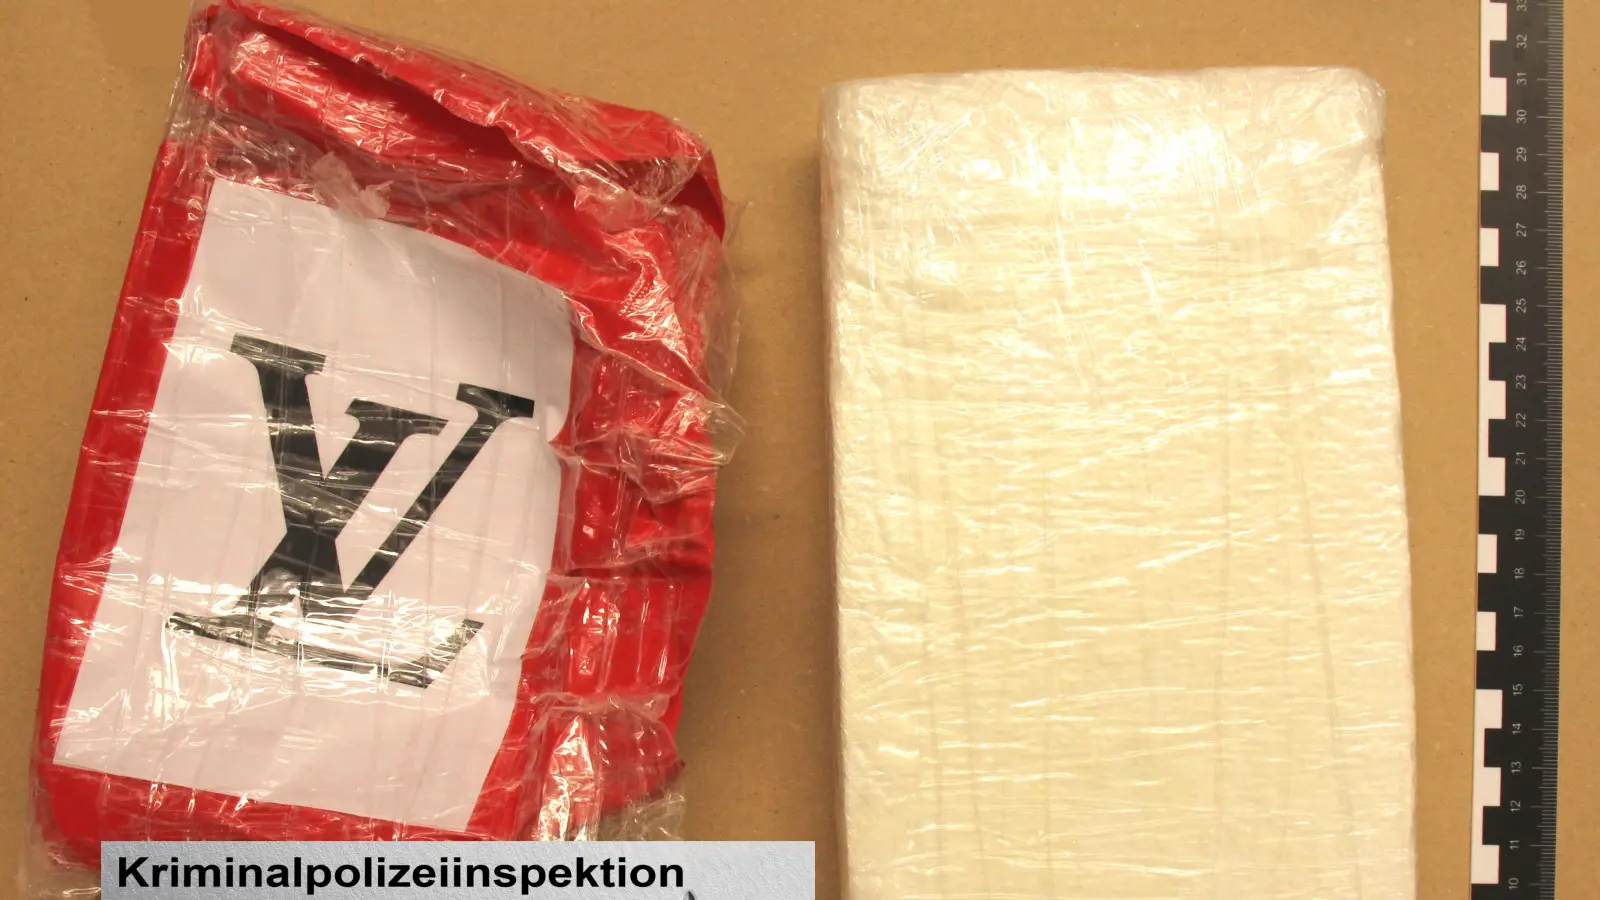 Die Kriminalpolizei Weiden hat ein Kilogramm Kokain sichergestellt. (Bild: Kriminalpolizeiinspektion Weiden)